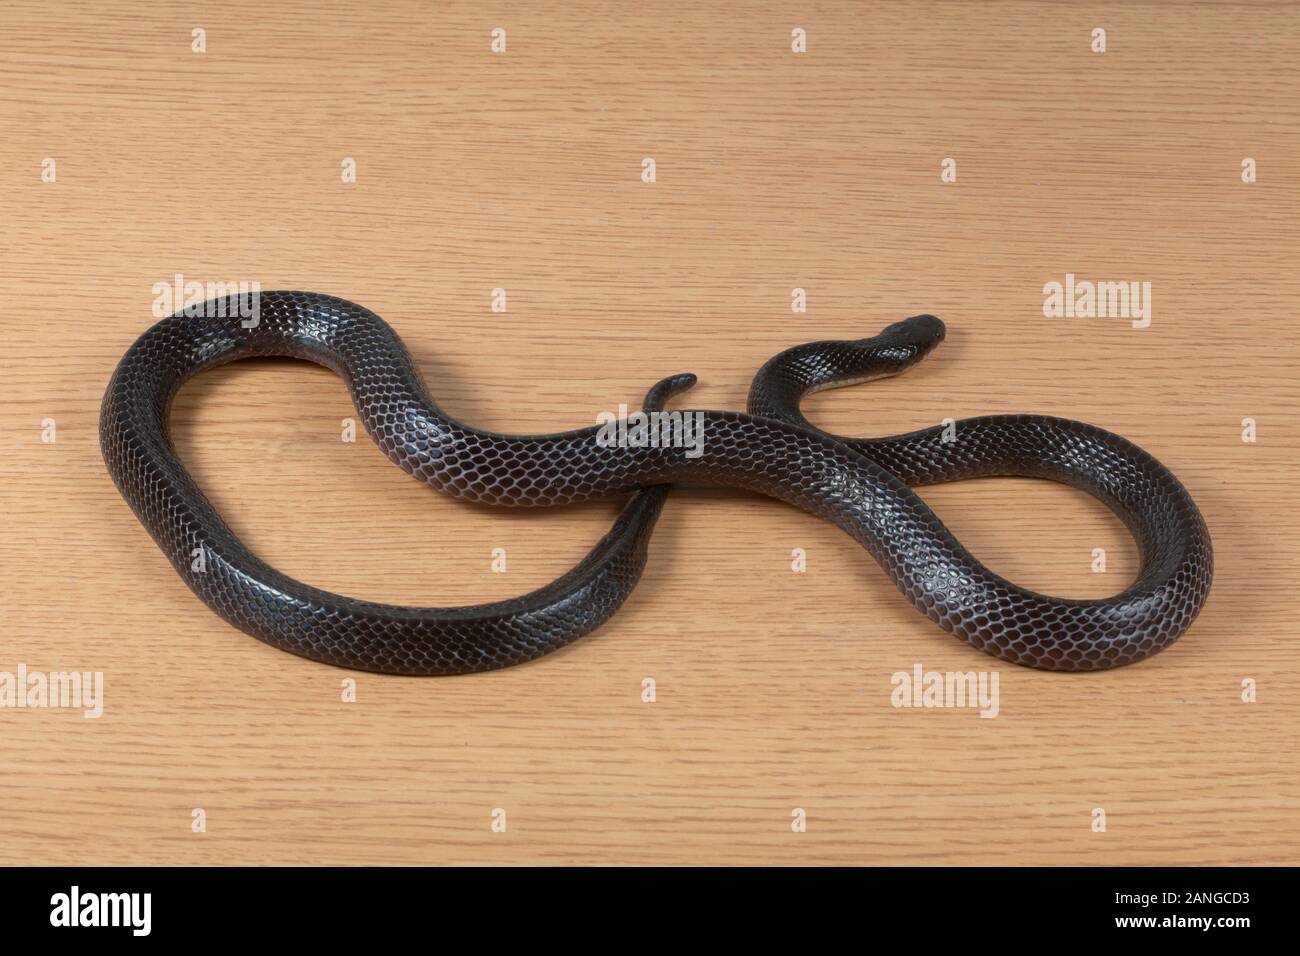 Mayor krait Bungarus negro, Níger serpiente venenosa de la familia Elapidae. La especie es endémica en el sur de Asia. Foto de stock